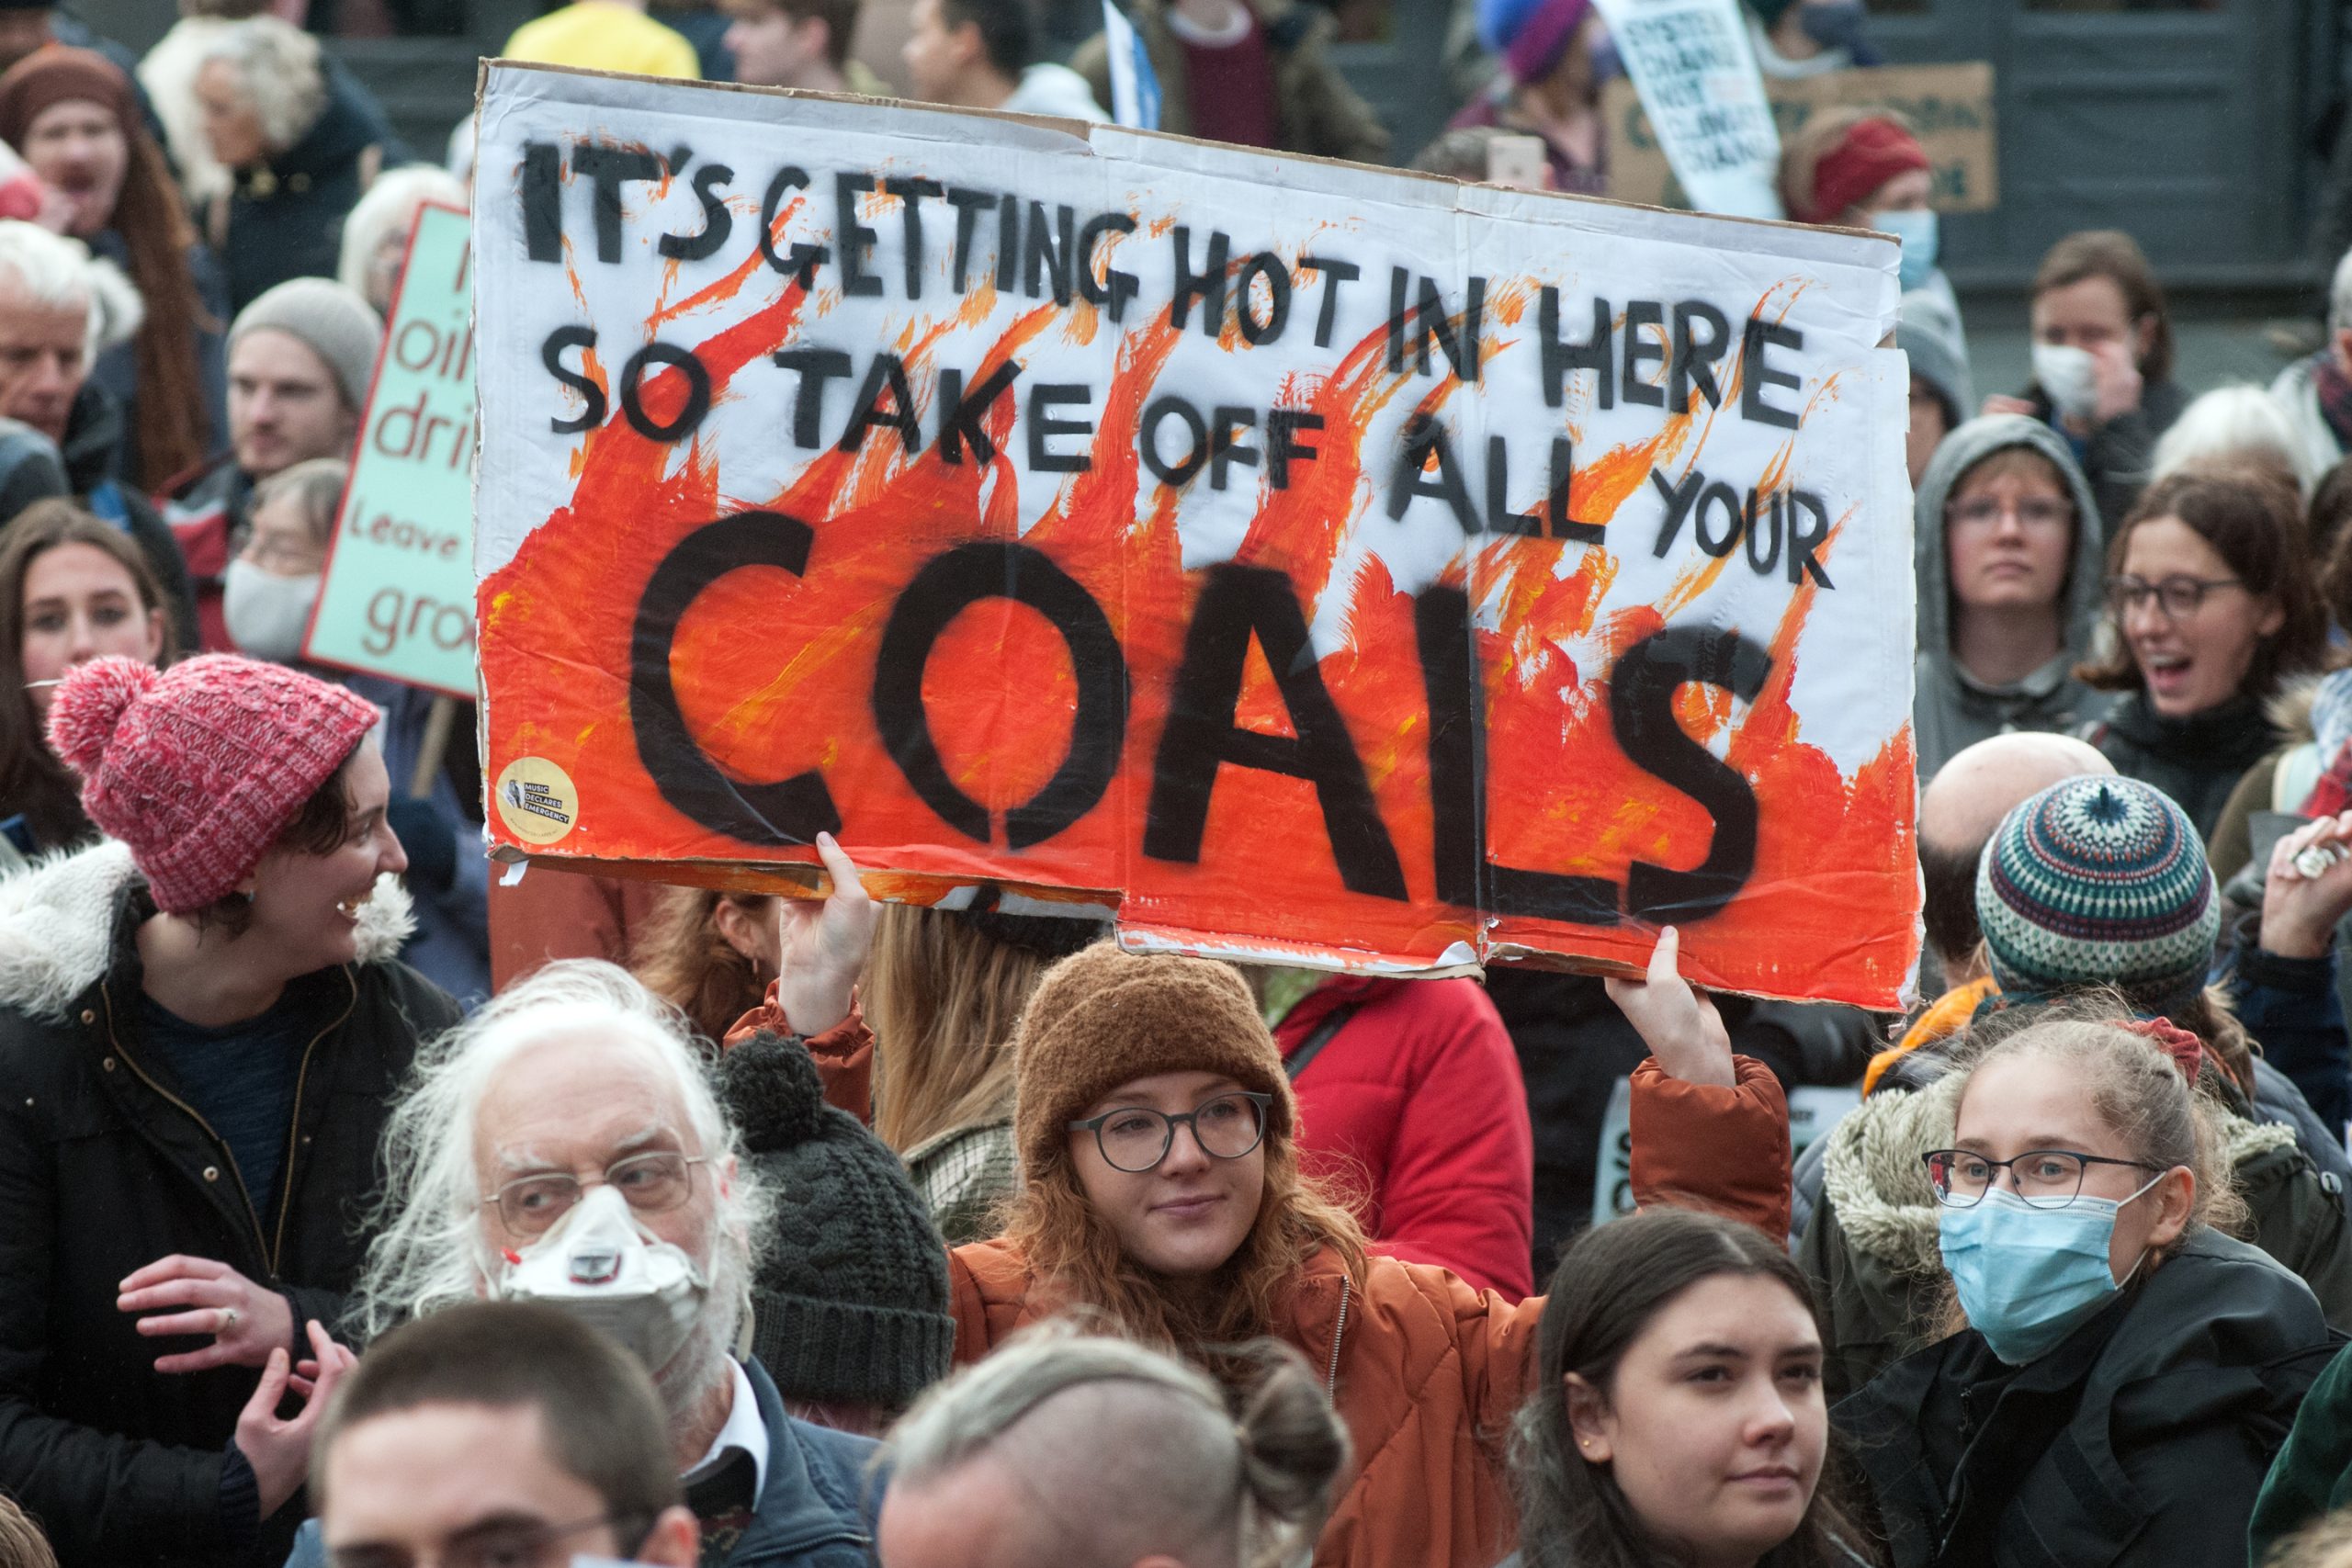 Manifestantes, una de ellas con un cartel que dice "Está haciendo calor aquí así que quítense todos sus carbones".